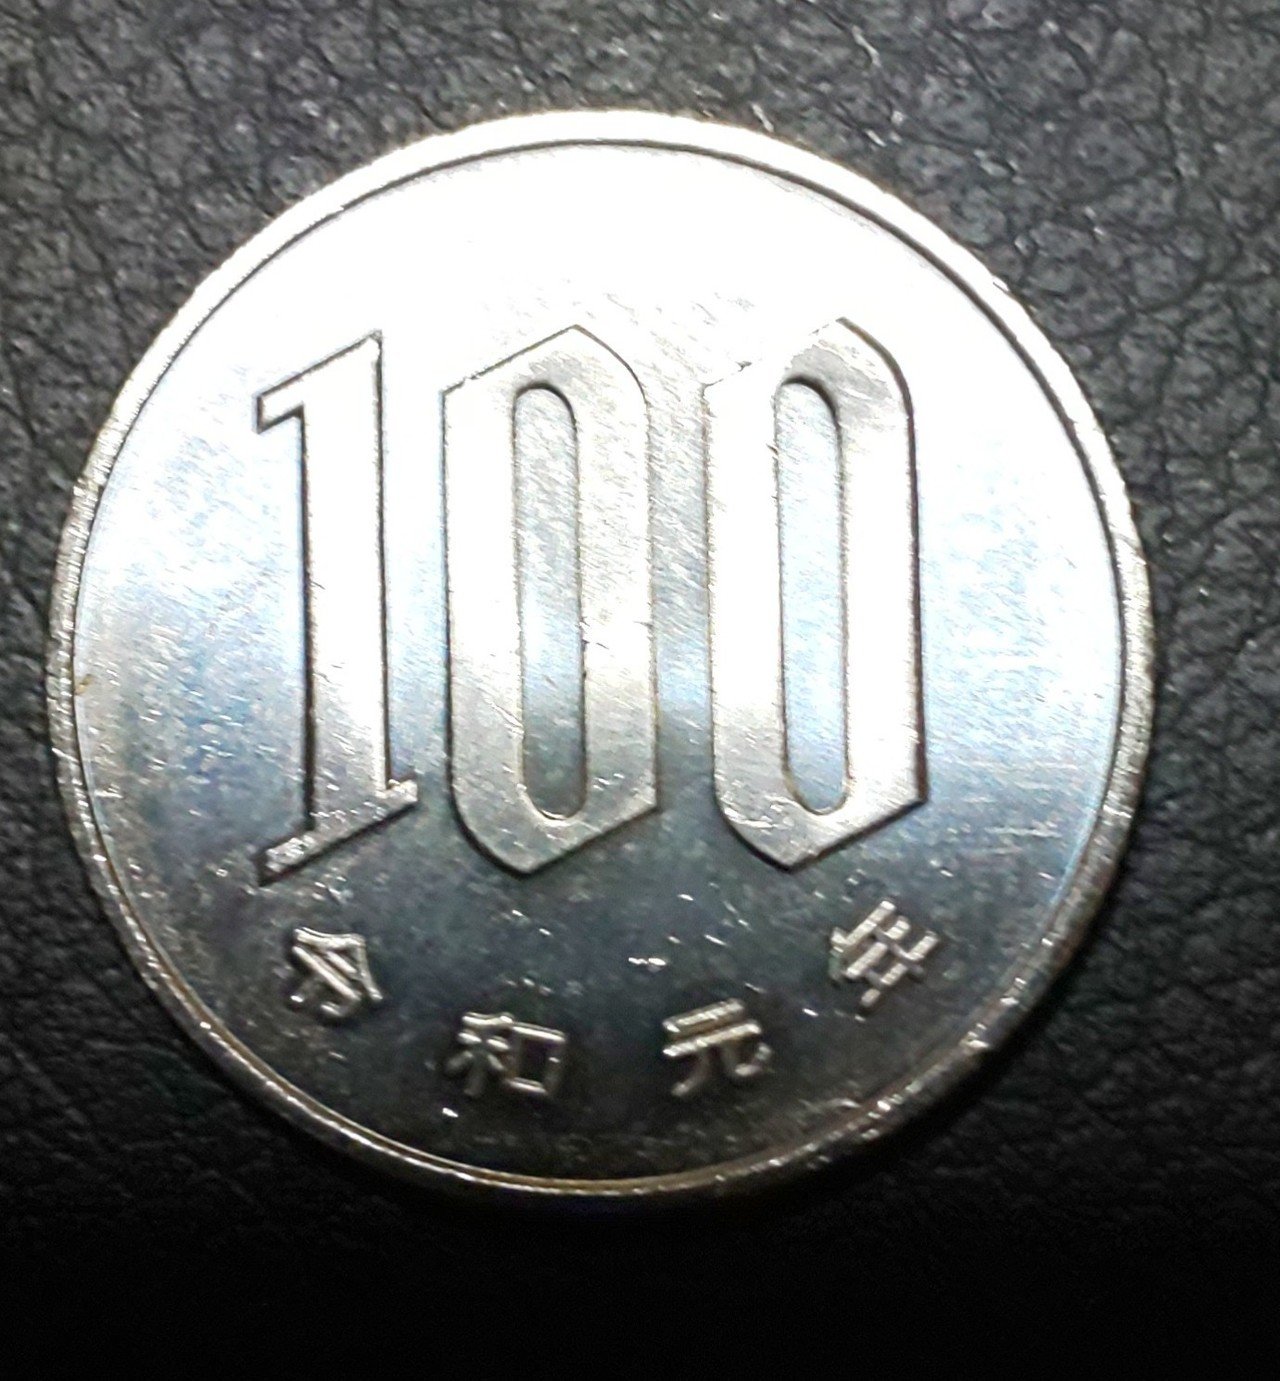 令和元年の100円玉get 一歩の一歩目 Note